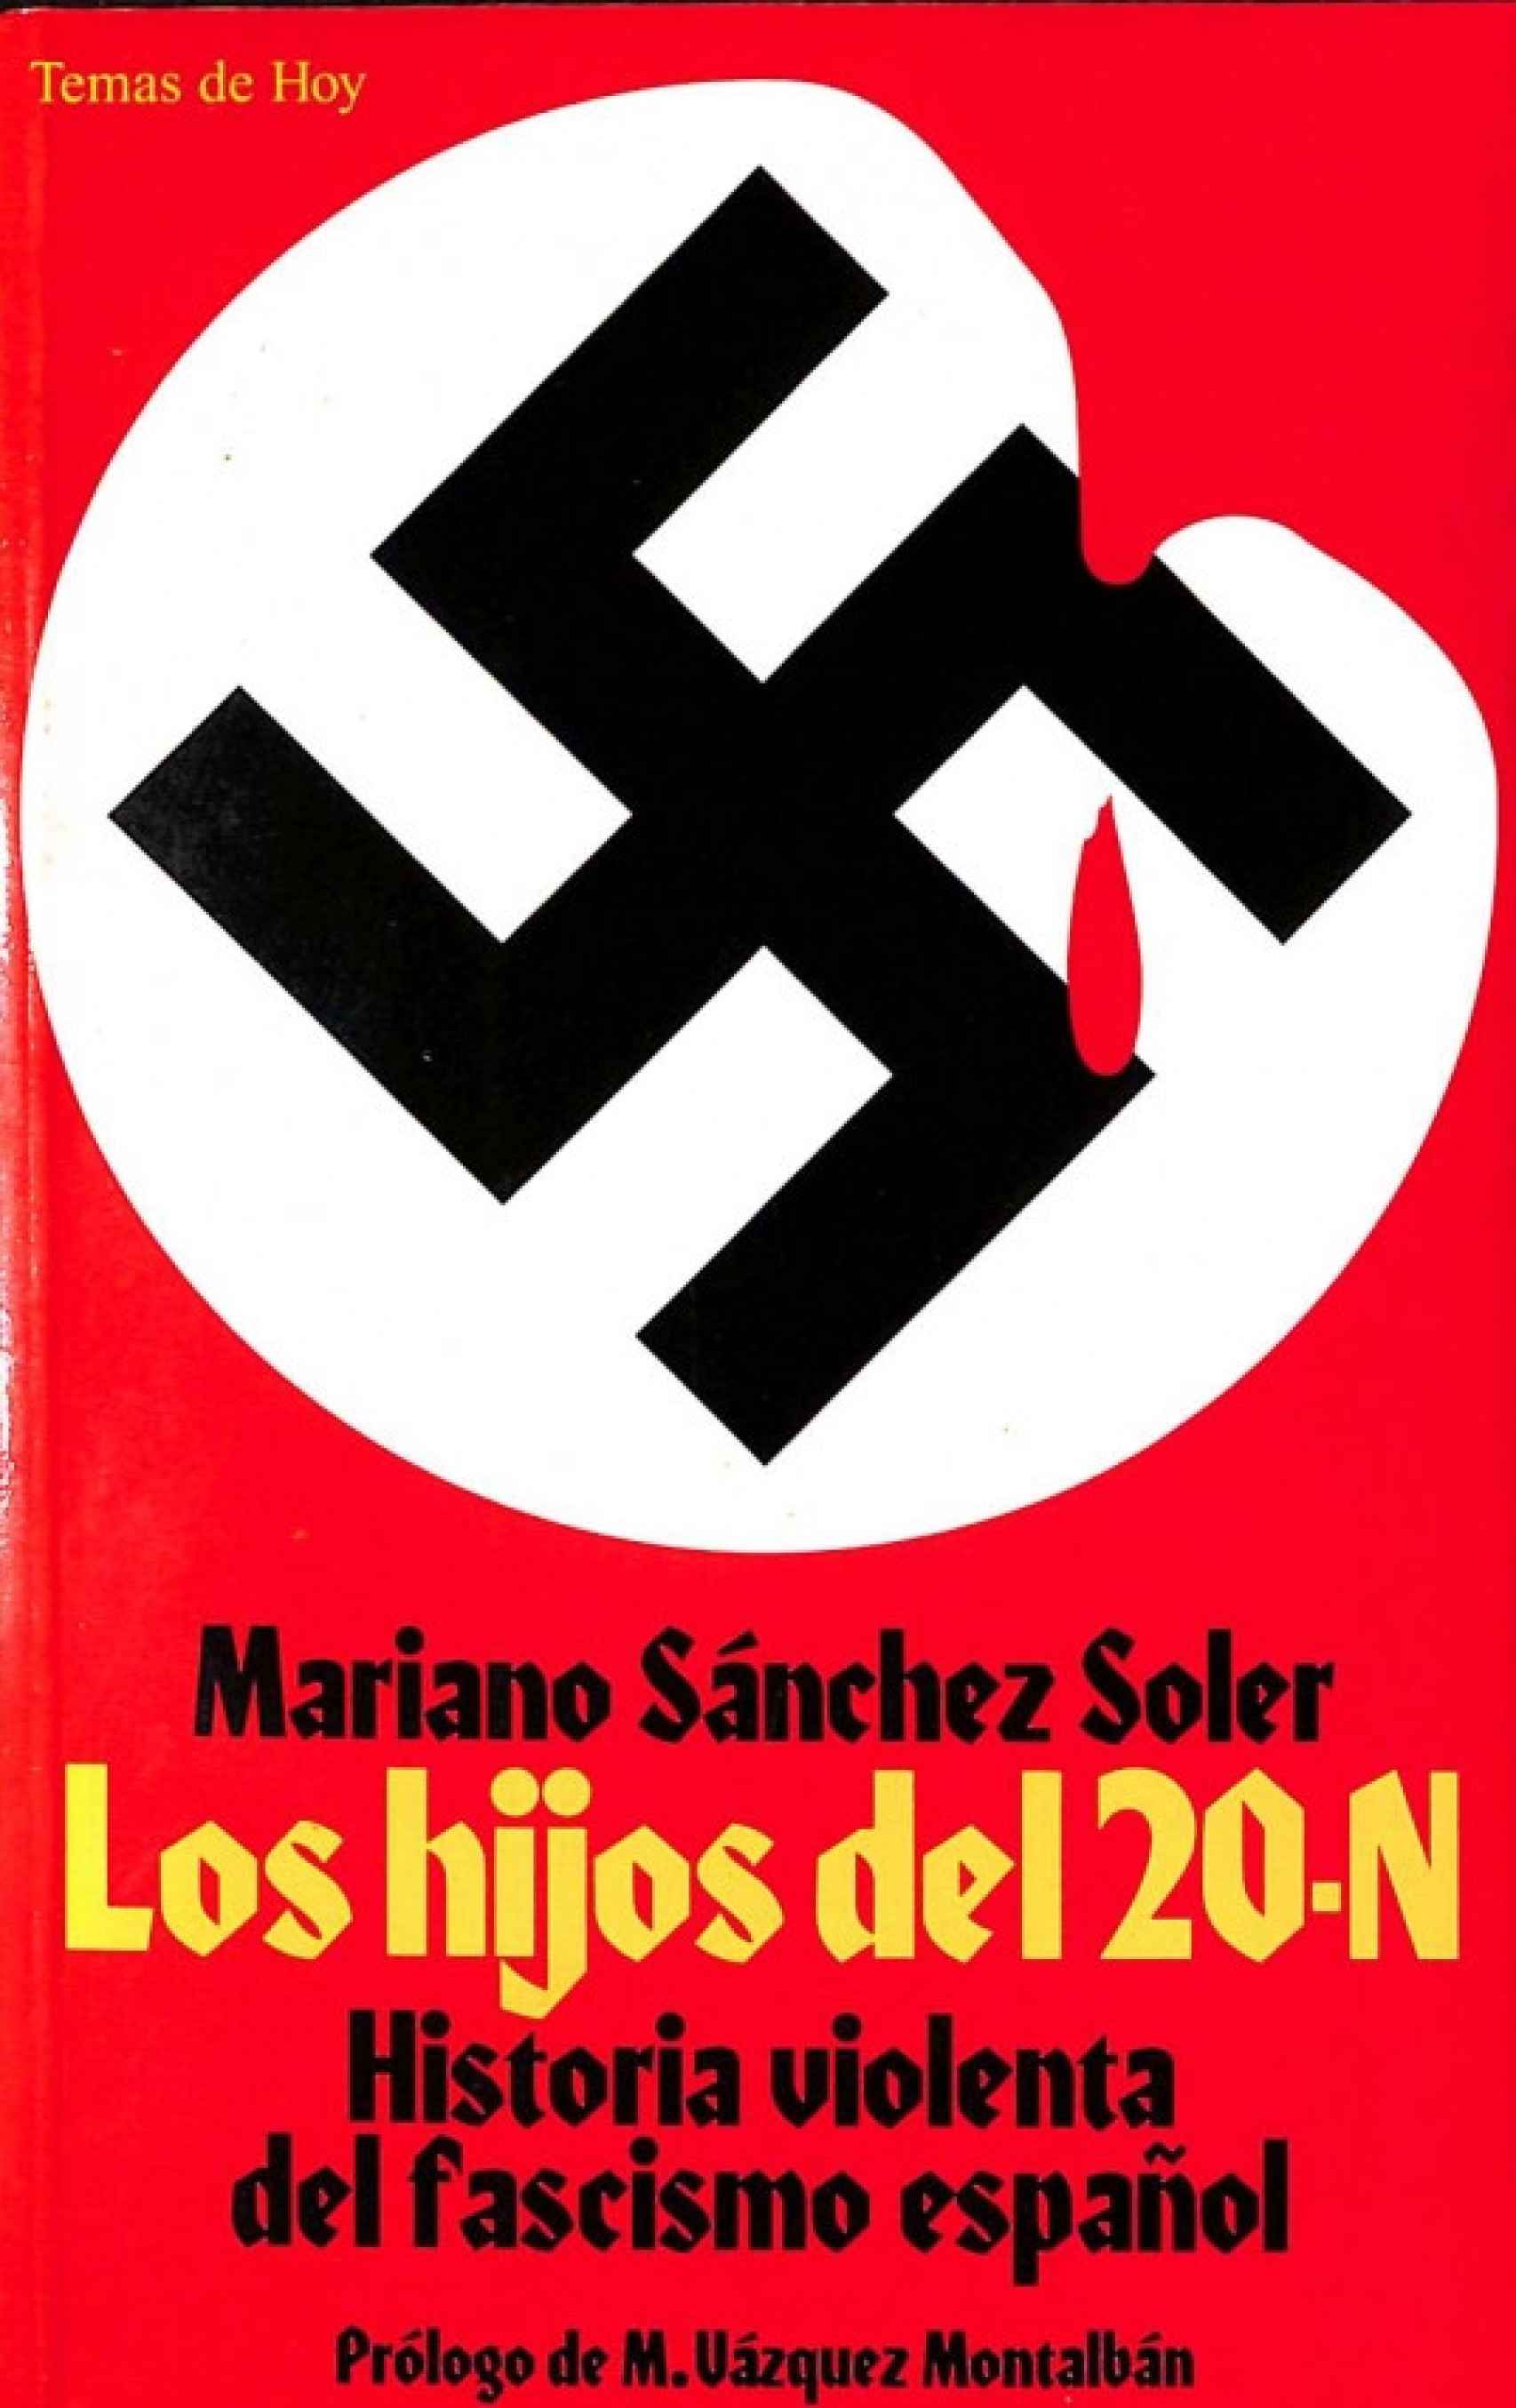 Portada de 'Los hijos del 20-N', de Mariano Sánchez Soler.